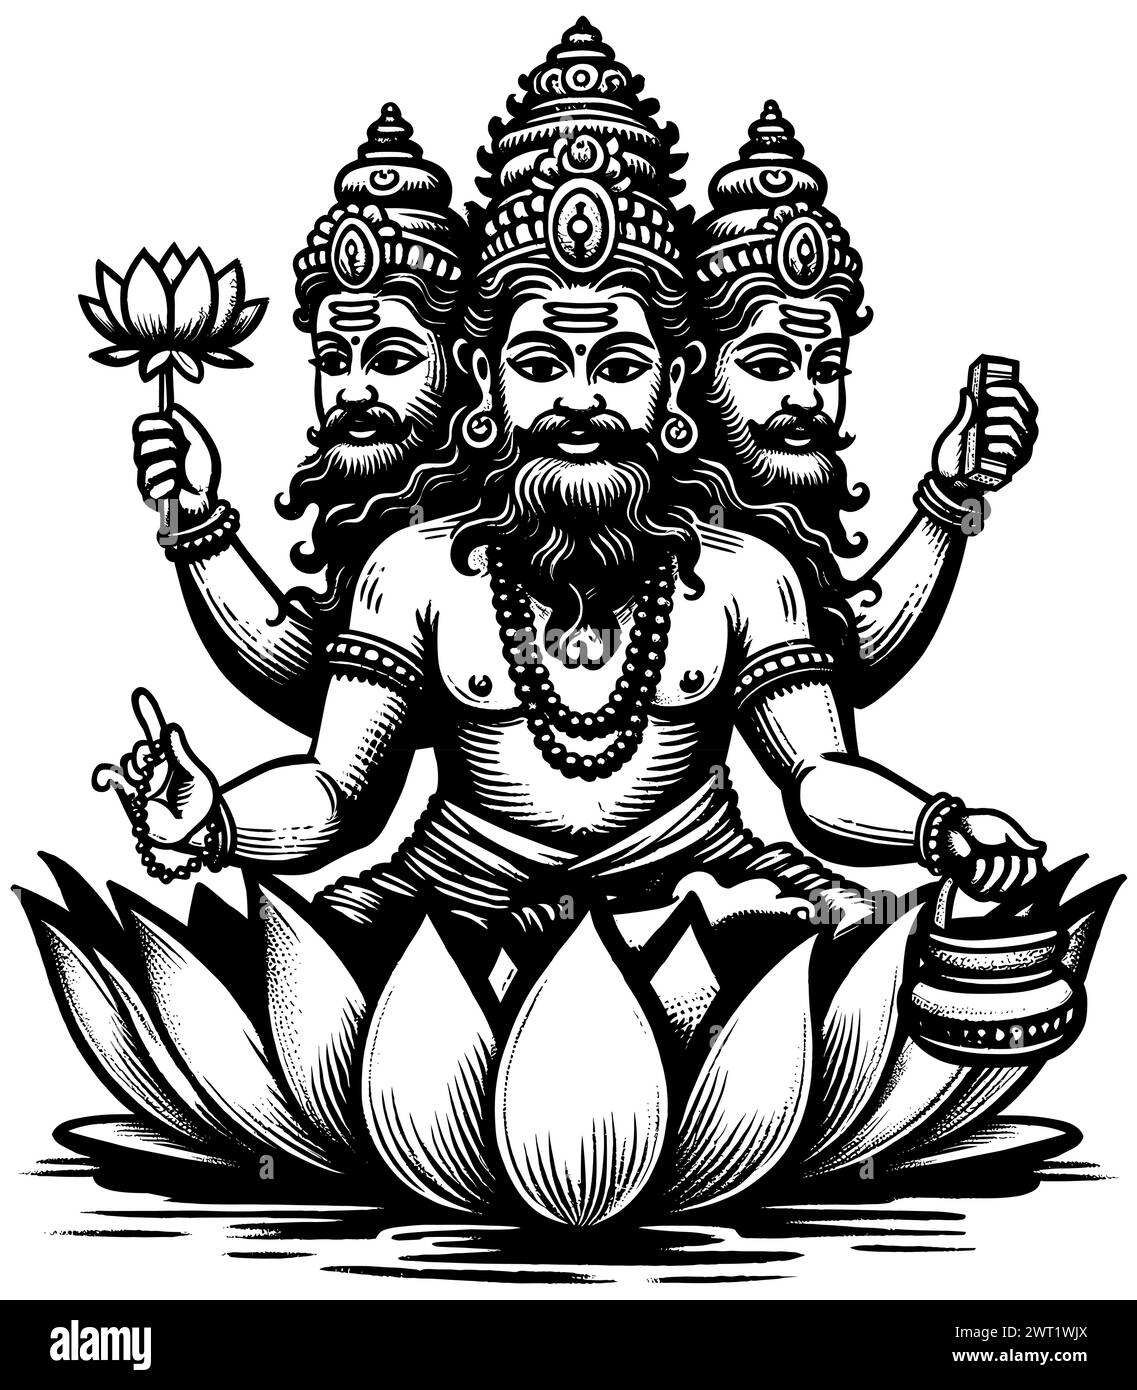 Holzschnitt-Illustration des hinduistischen Gottes Brahma auf weißem Hintergrund. Stock Vektor